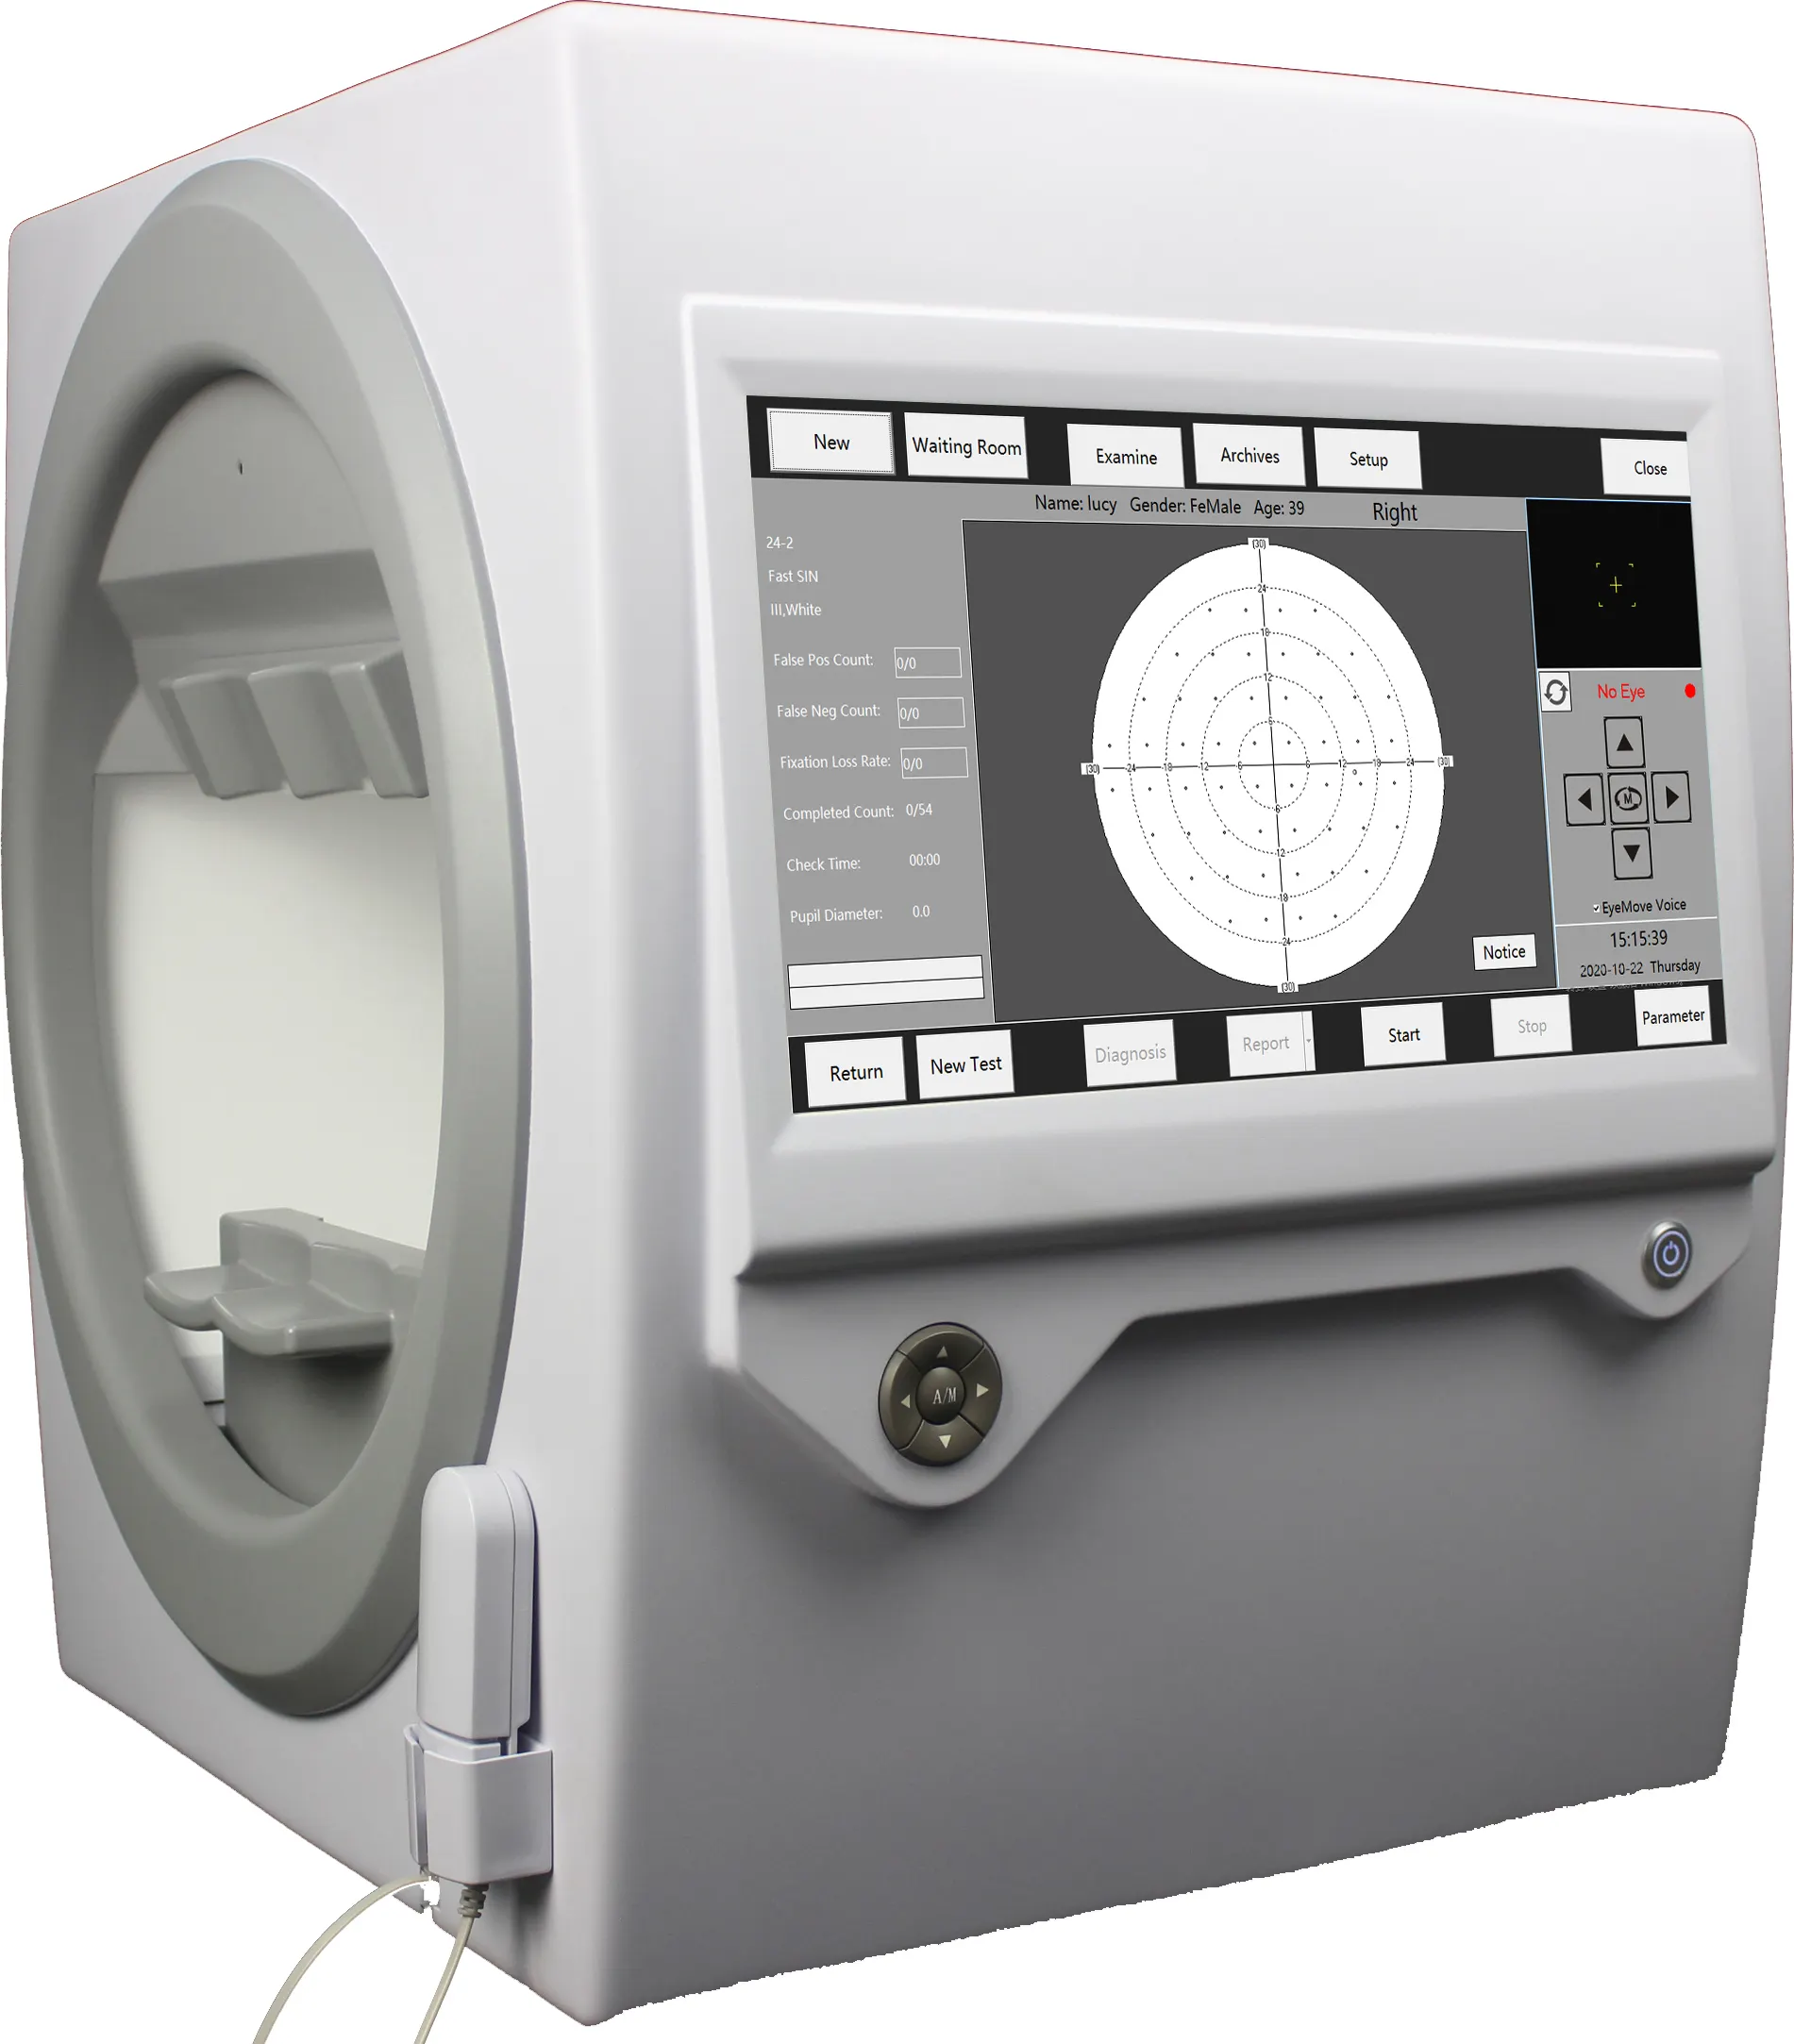 جهاز فحص العيون الكهربائي من Goldman, جهاز فحص العيون الكهربائي CE جهاز فحص العيون التلقائي محلل المجال المرئي المحيط